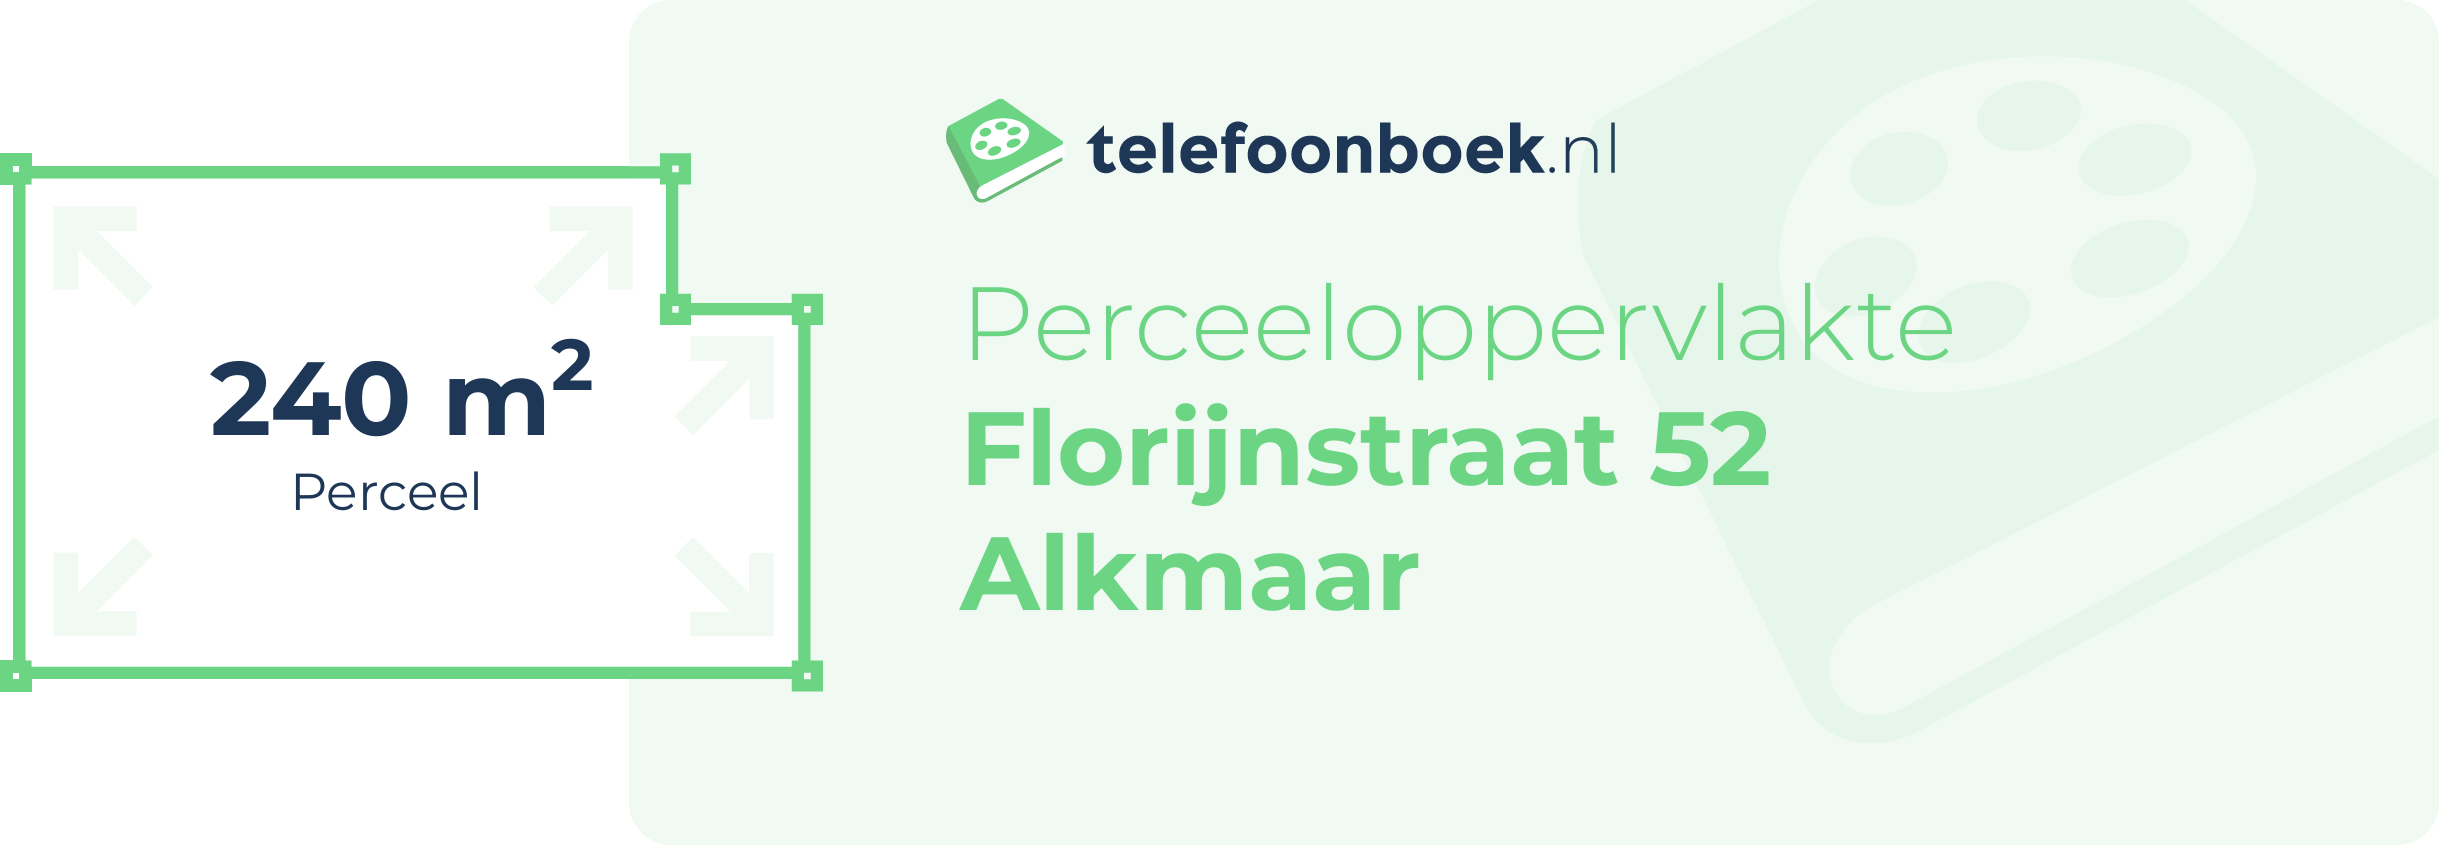 Perceeloppervlakte Florijnstraat 52 Alkmaar